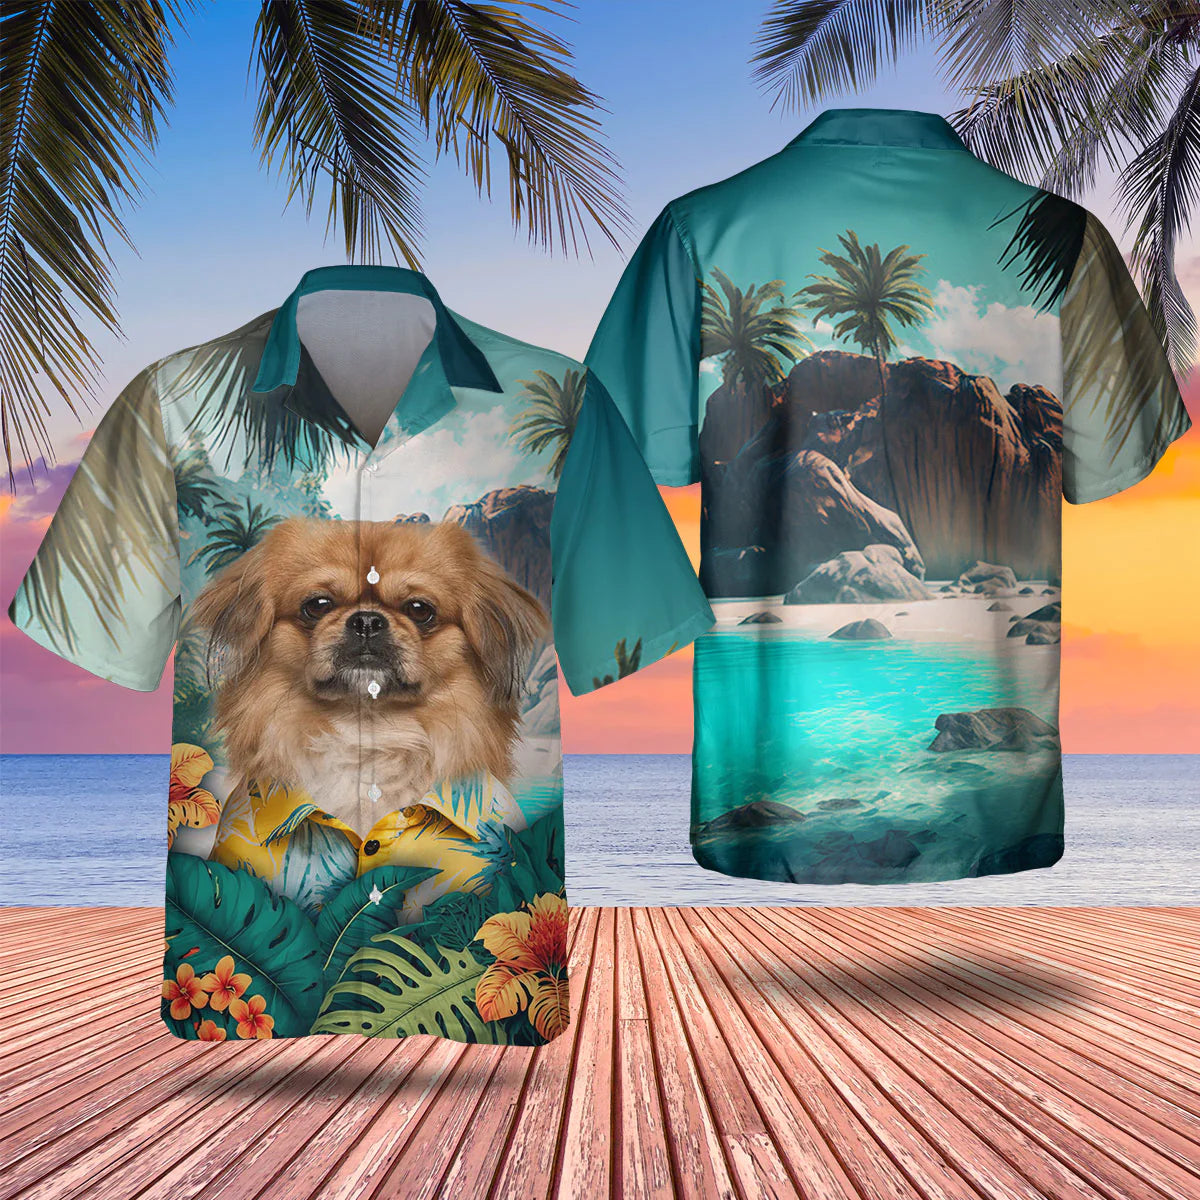 Pekingese - 3D Tropical Hawaiian Shirt